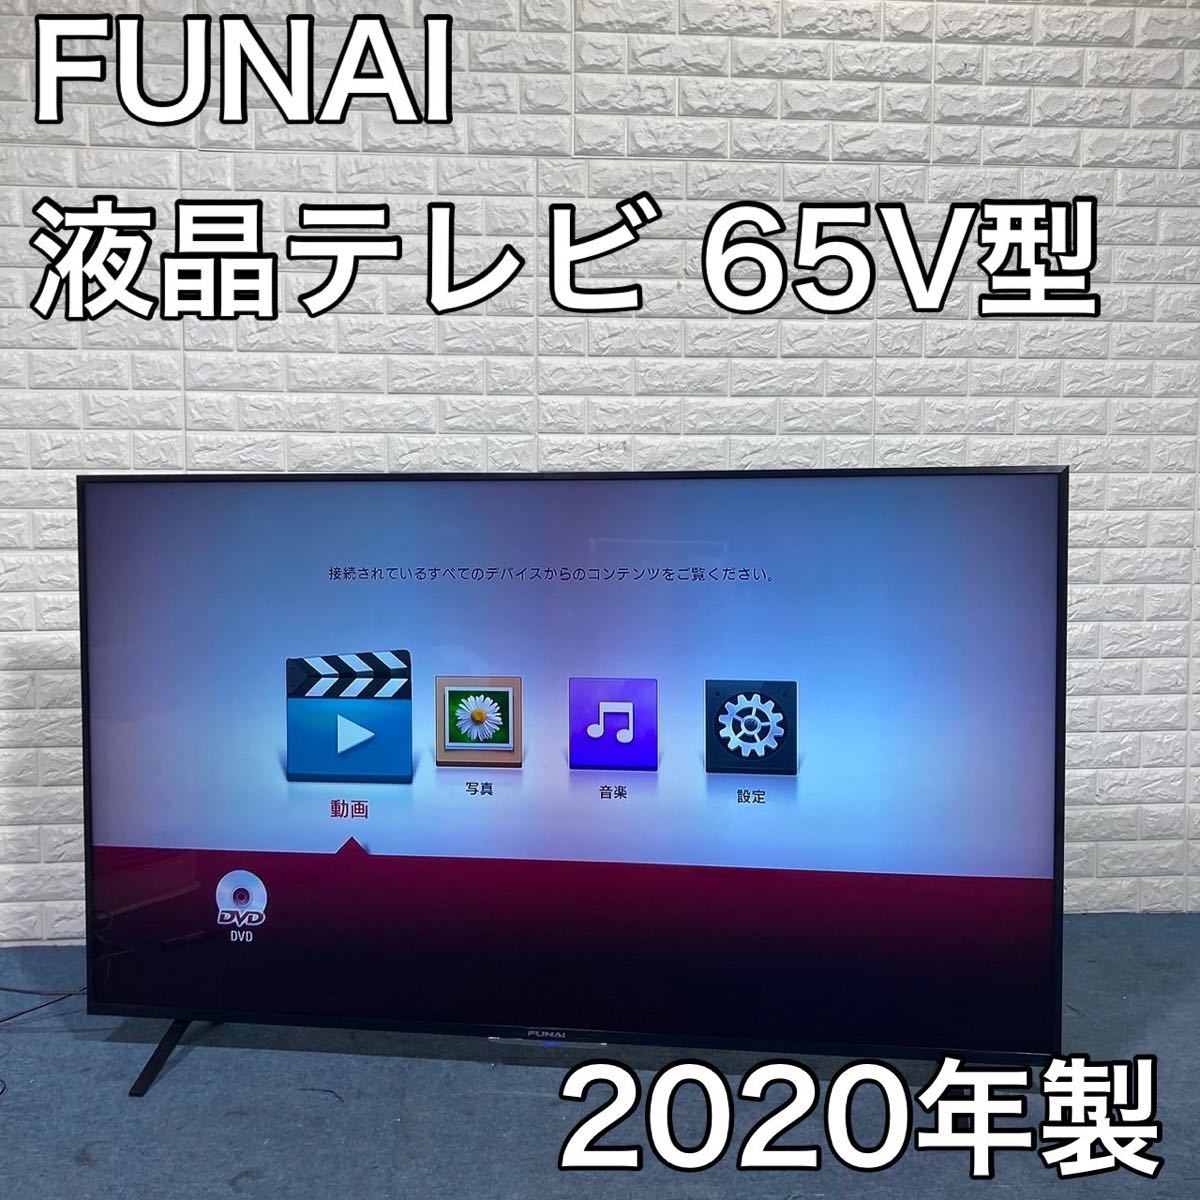 FUNAI 液晶テレビ FL-65UP520 65V型 2020年製 BB290 piso-uno.com